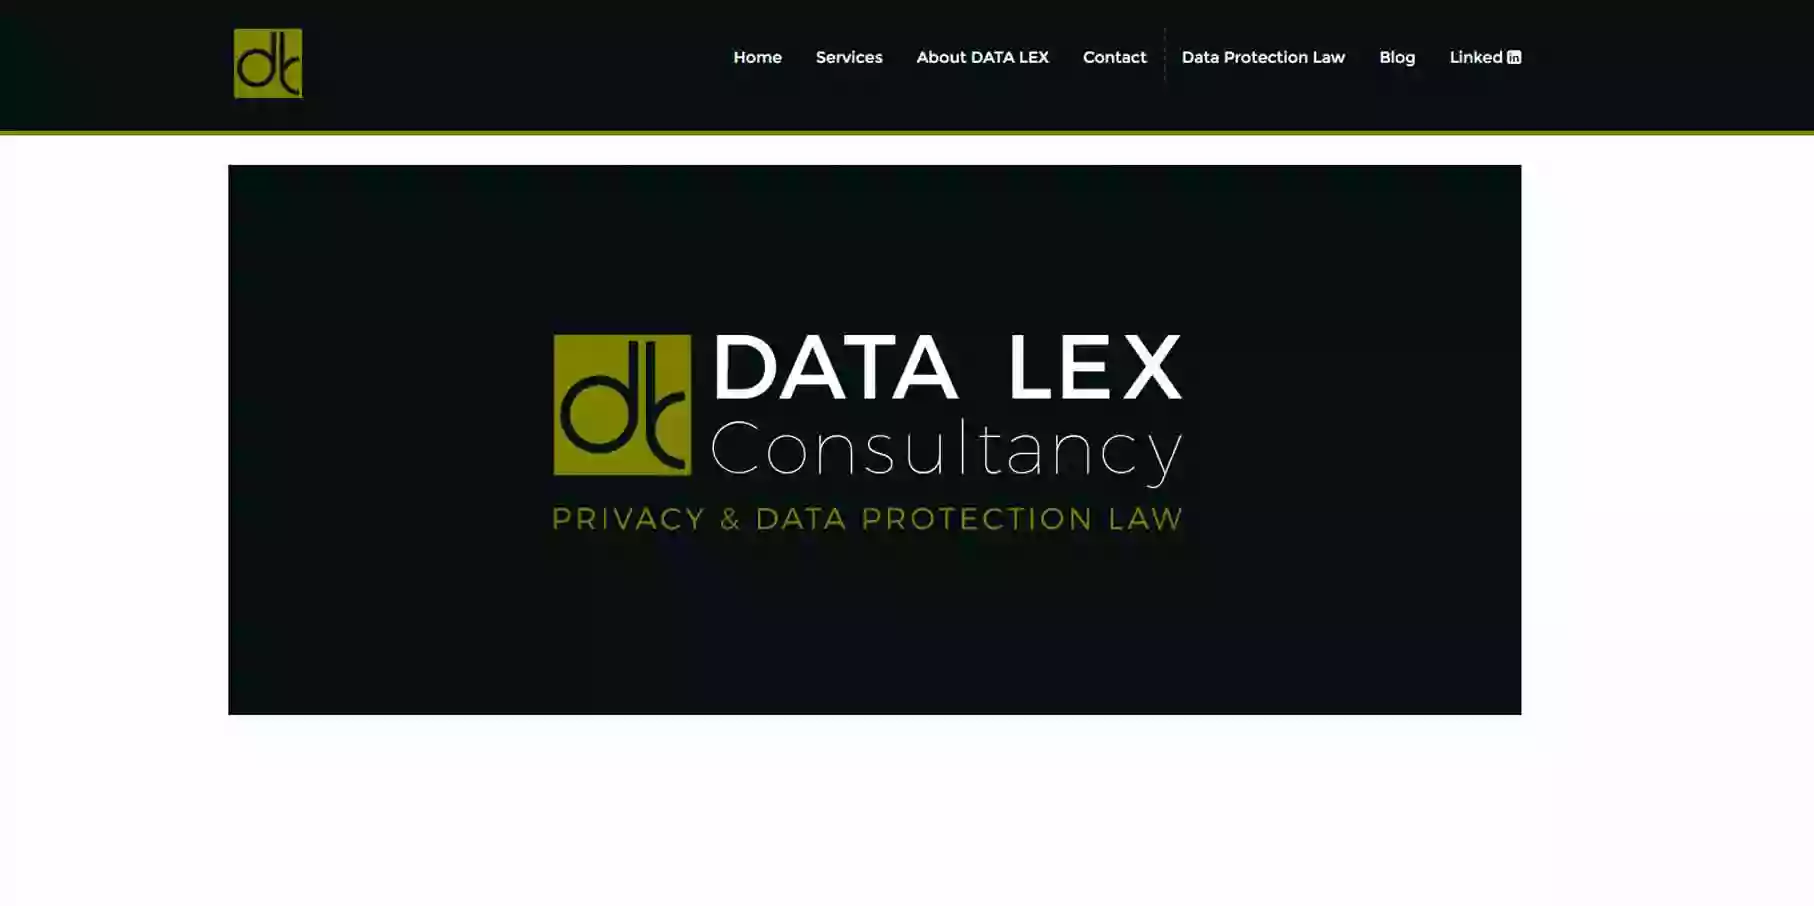 DATA LEX Consultancy